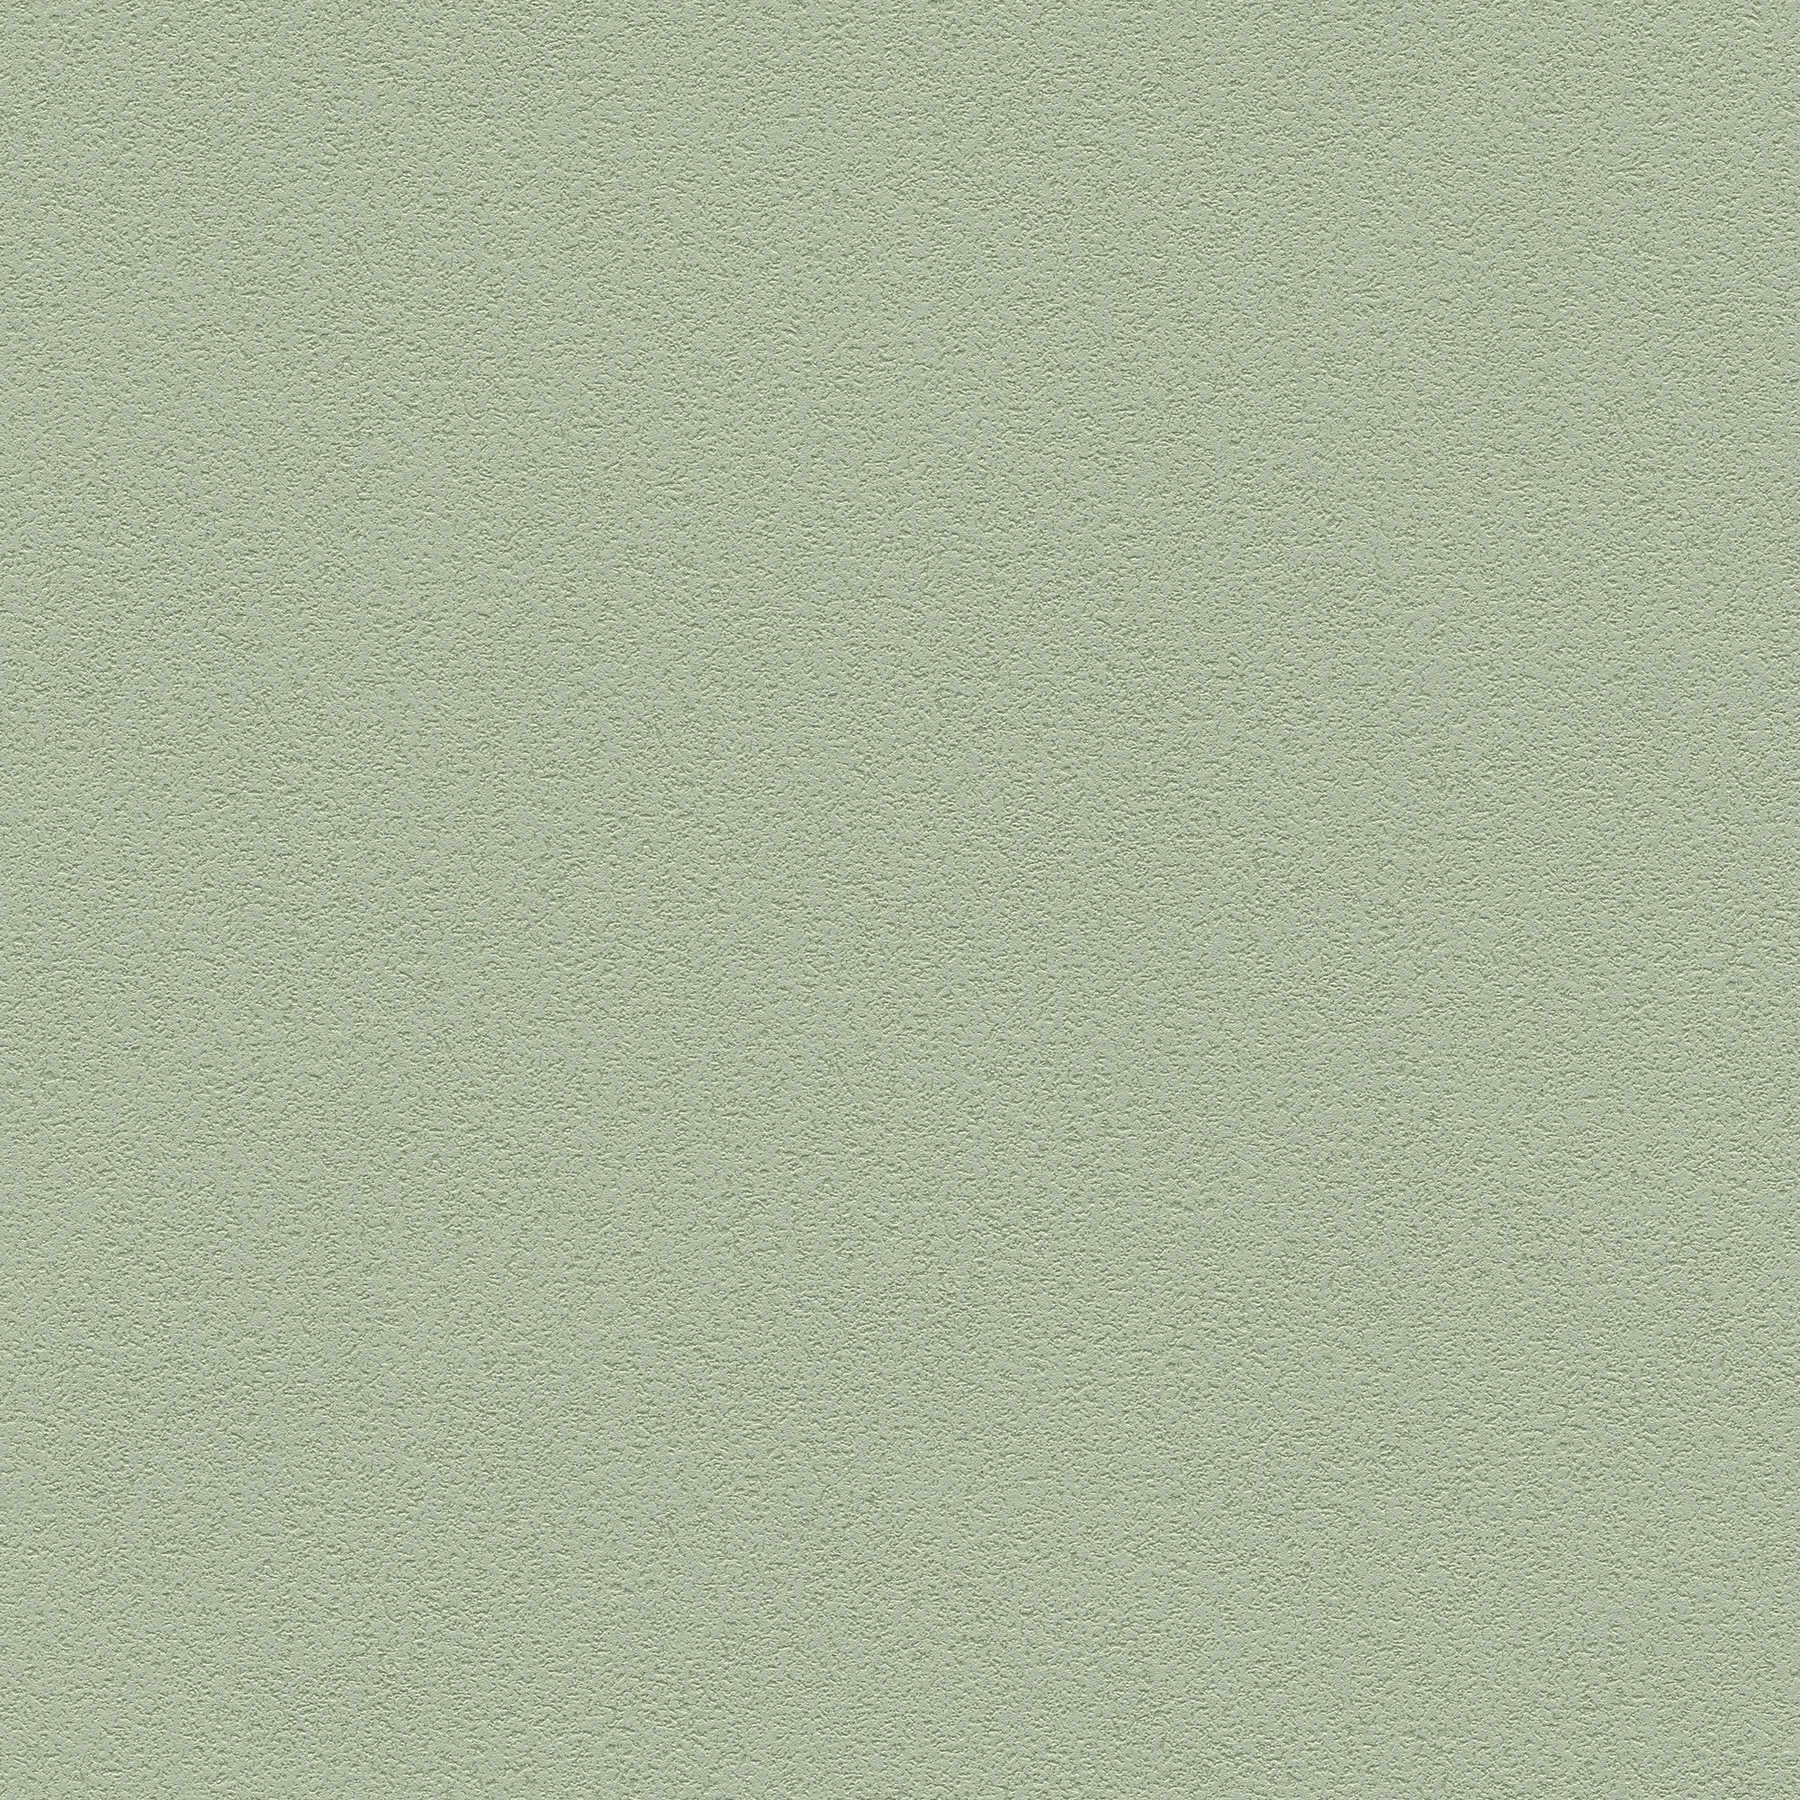 Papier peint uni avec structure de surface fine - vert
